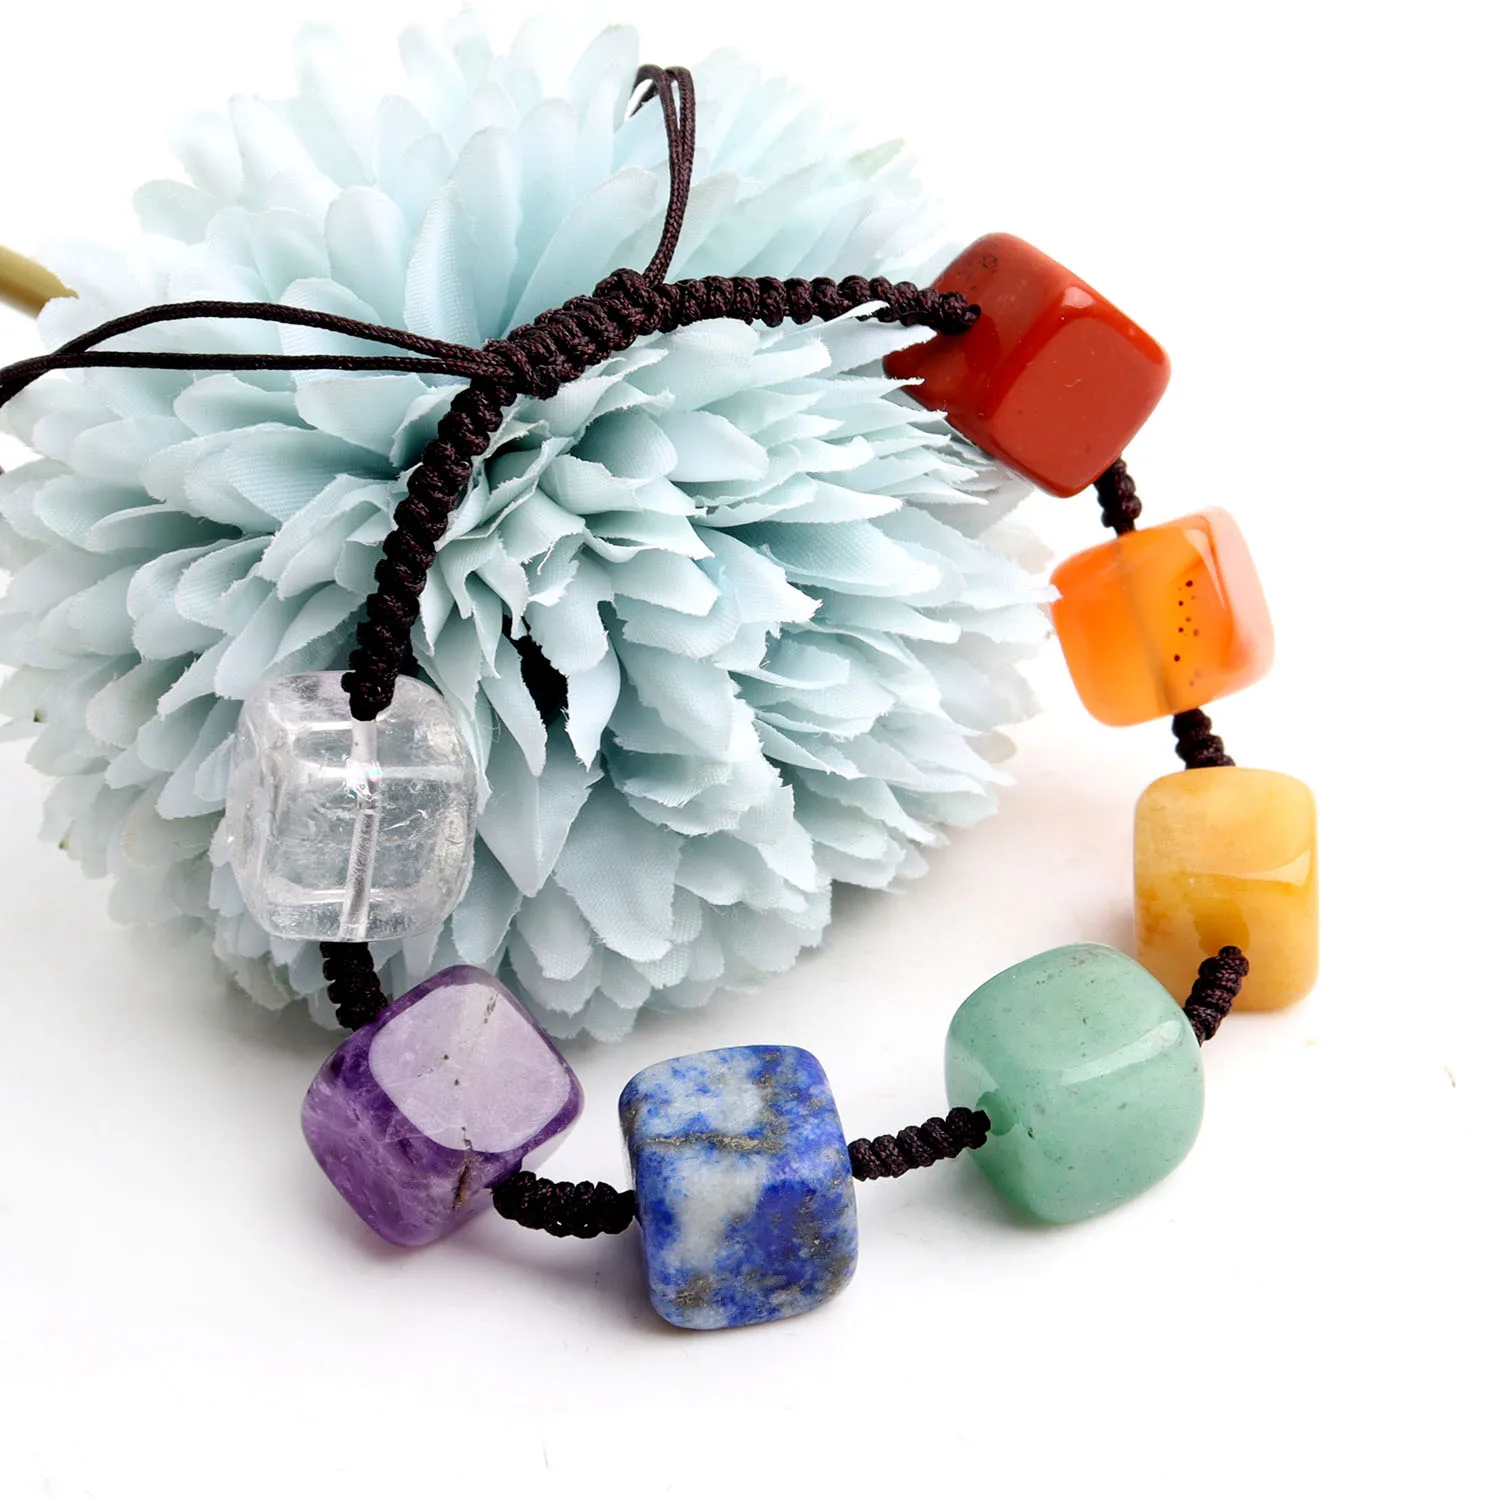 

1 шт. натуральный камень 7 Чакр браслет кубические кристаллы Вселенная Бусины В Стиле Йоги регулируемые браслеты лечение для мужчин женщин ю...